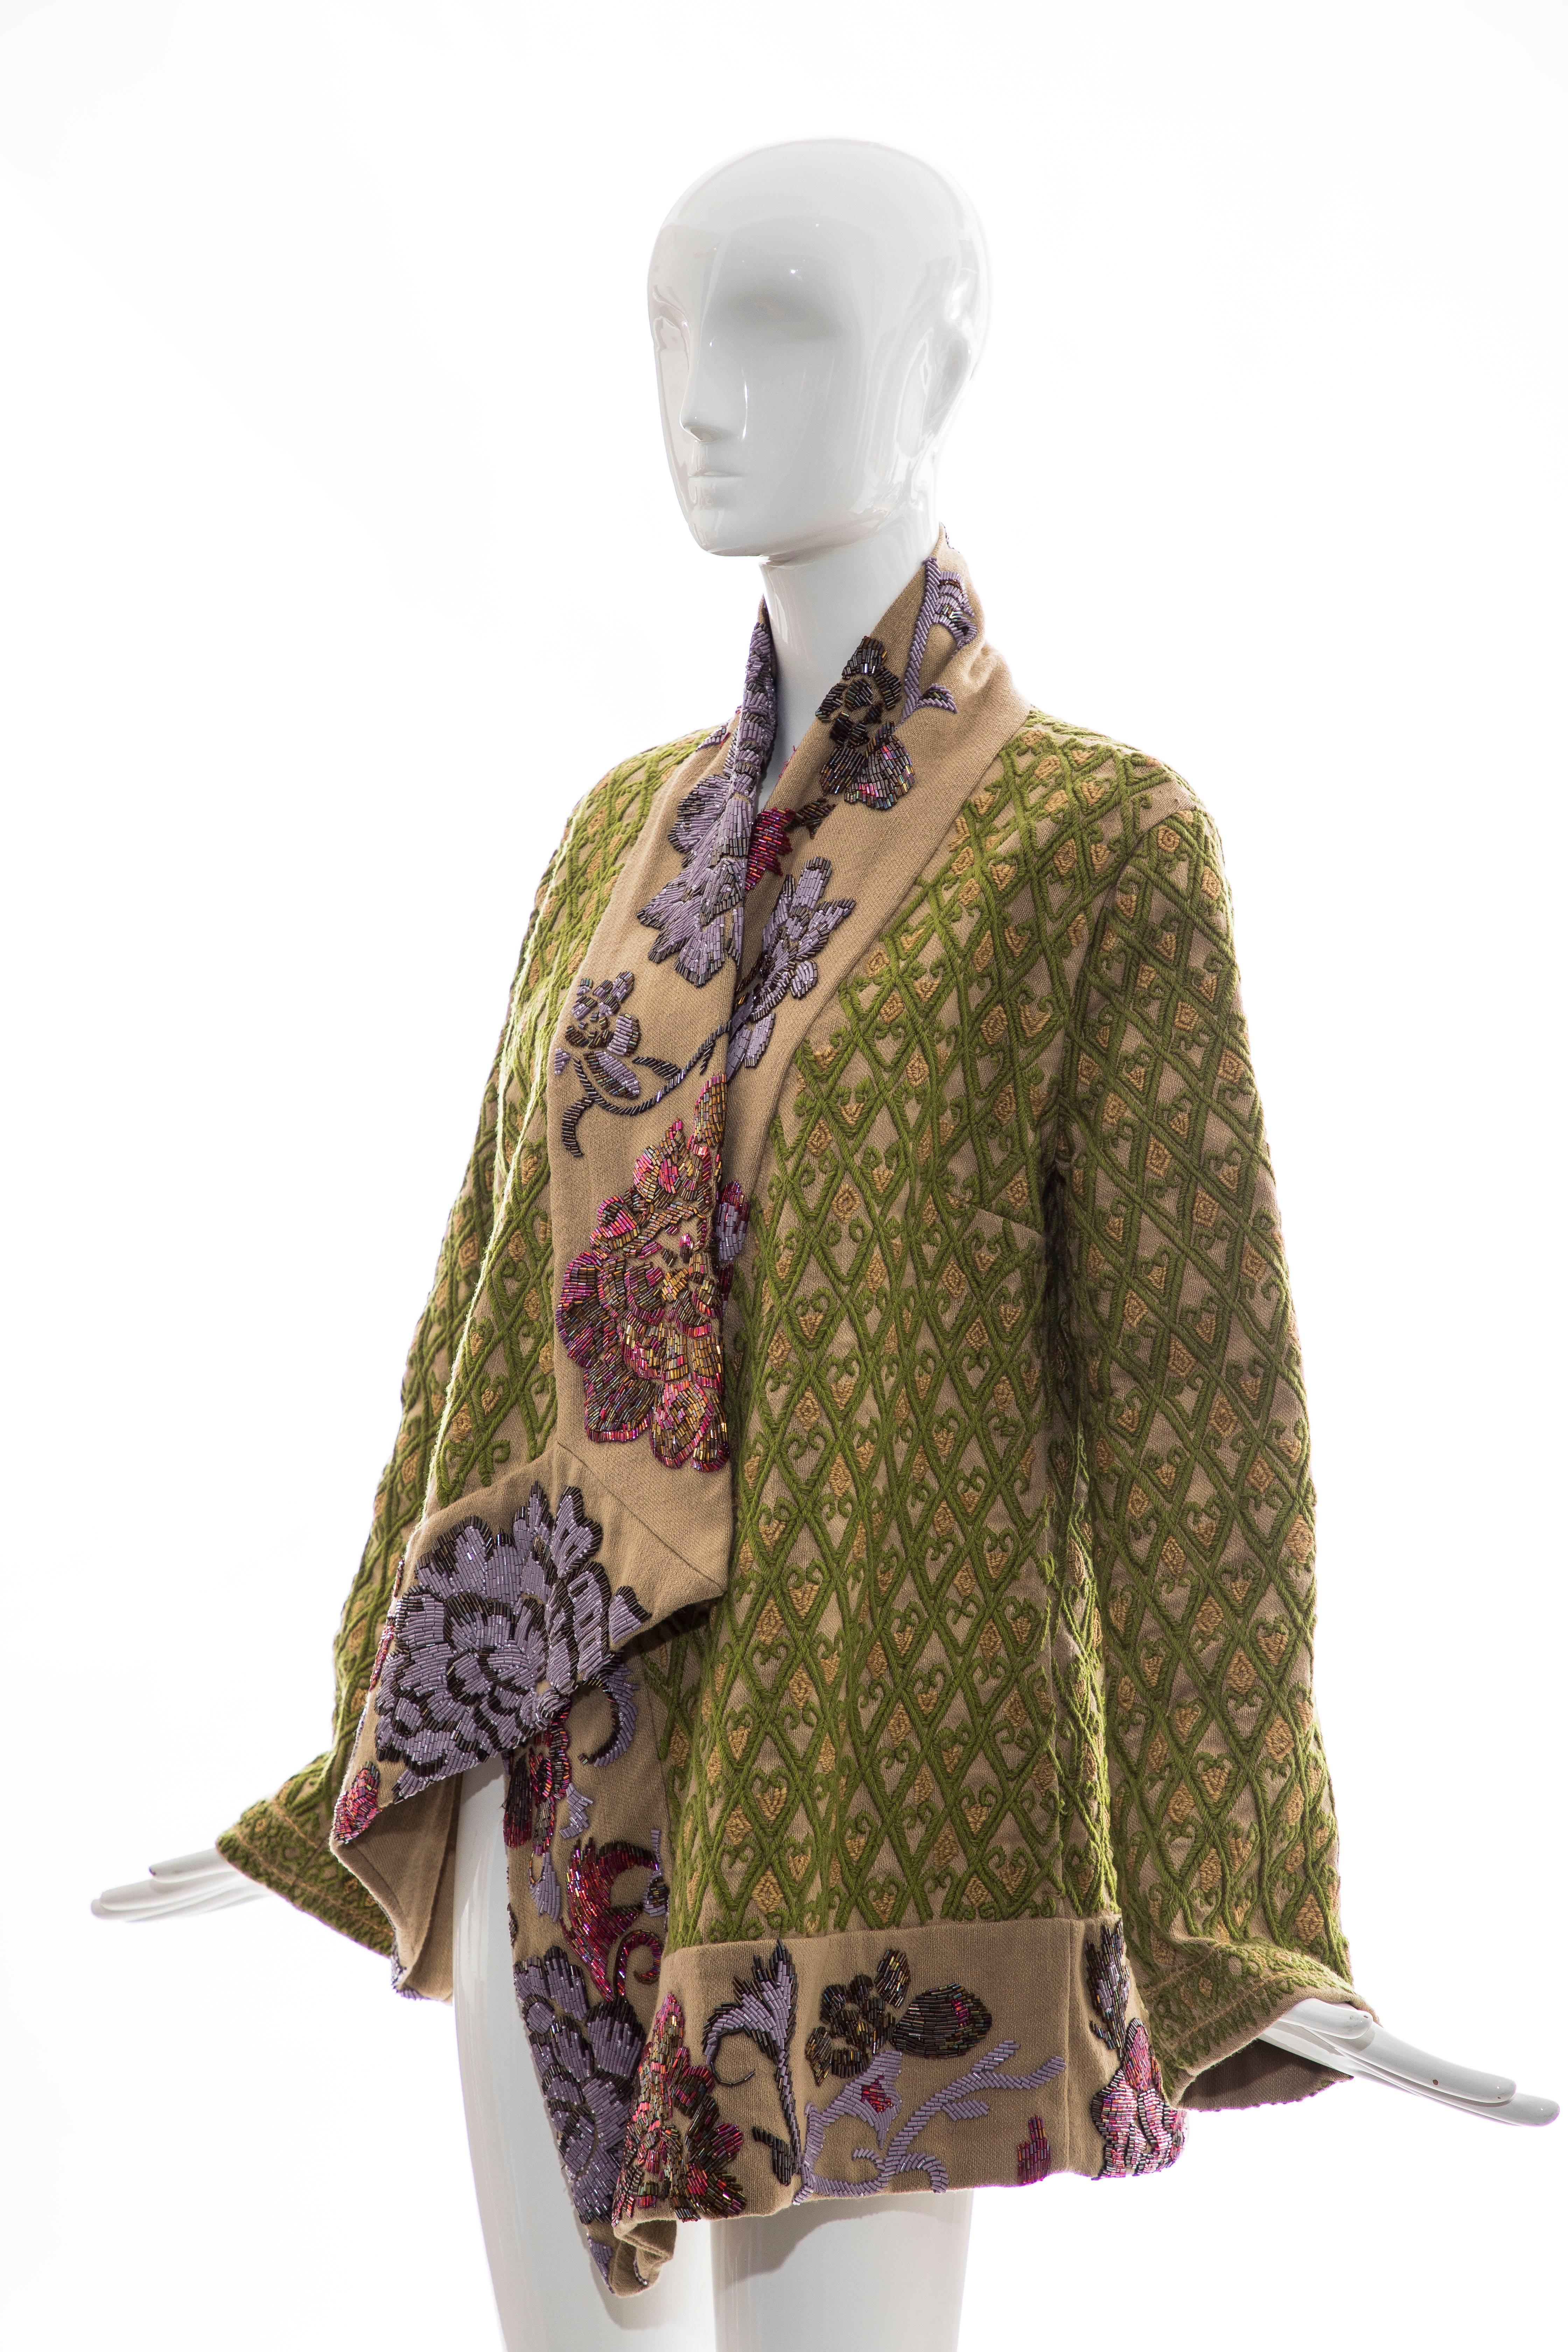 Dries Van Noten Runway Hemp Wool Floral Embroidered Beaded Jacket, Fall 2003 5